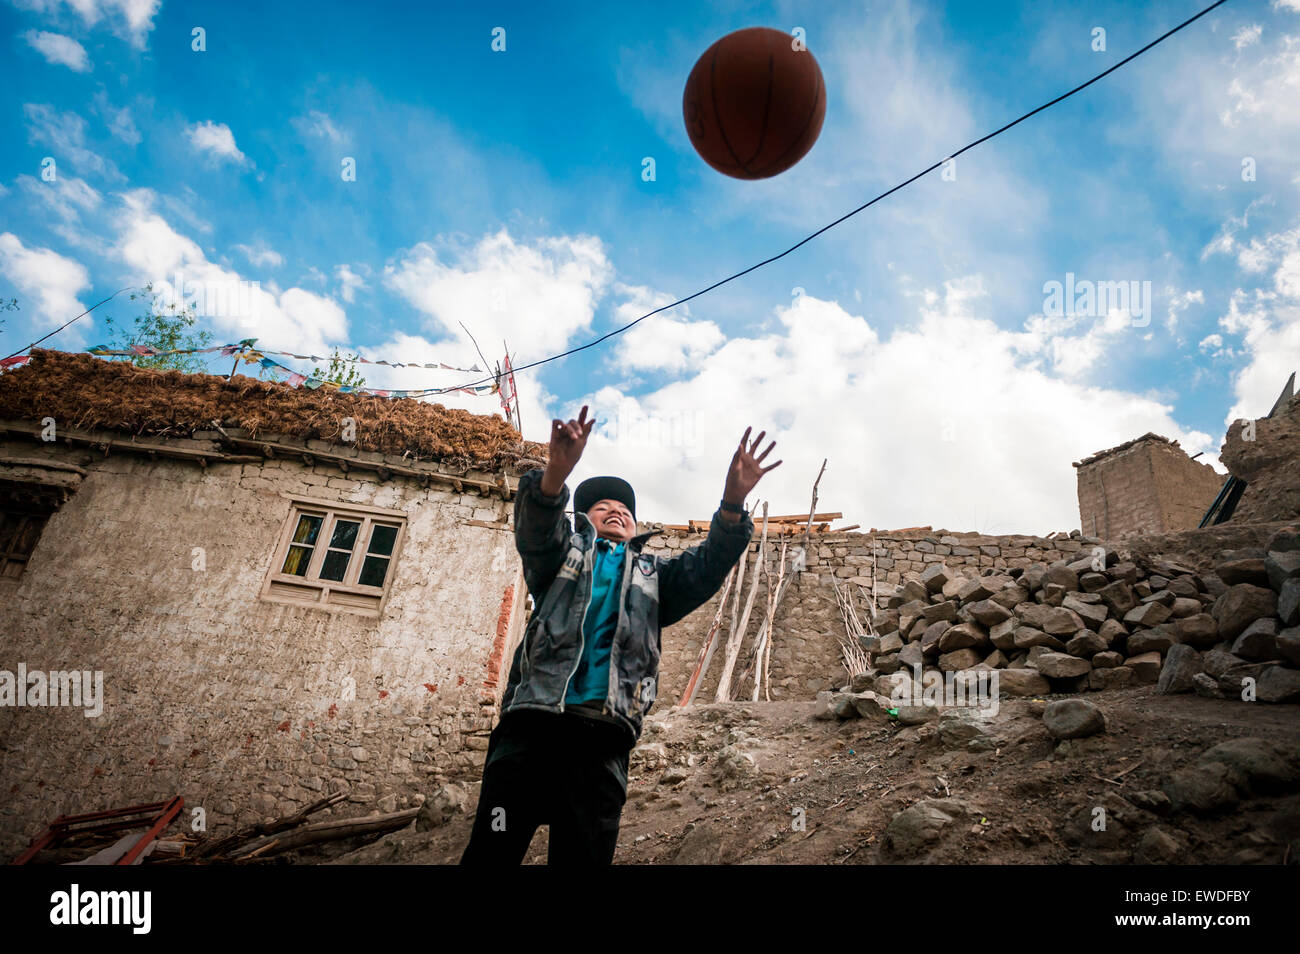 Ein Junge spielt Ball in Ang, Ladakh, Indien. Stockfoto